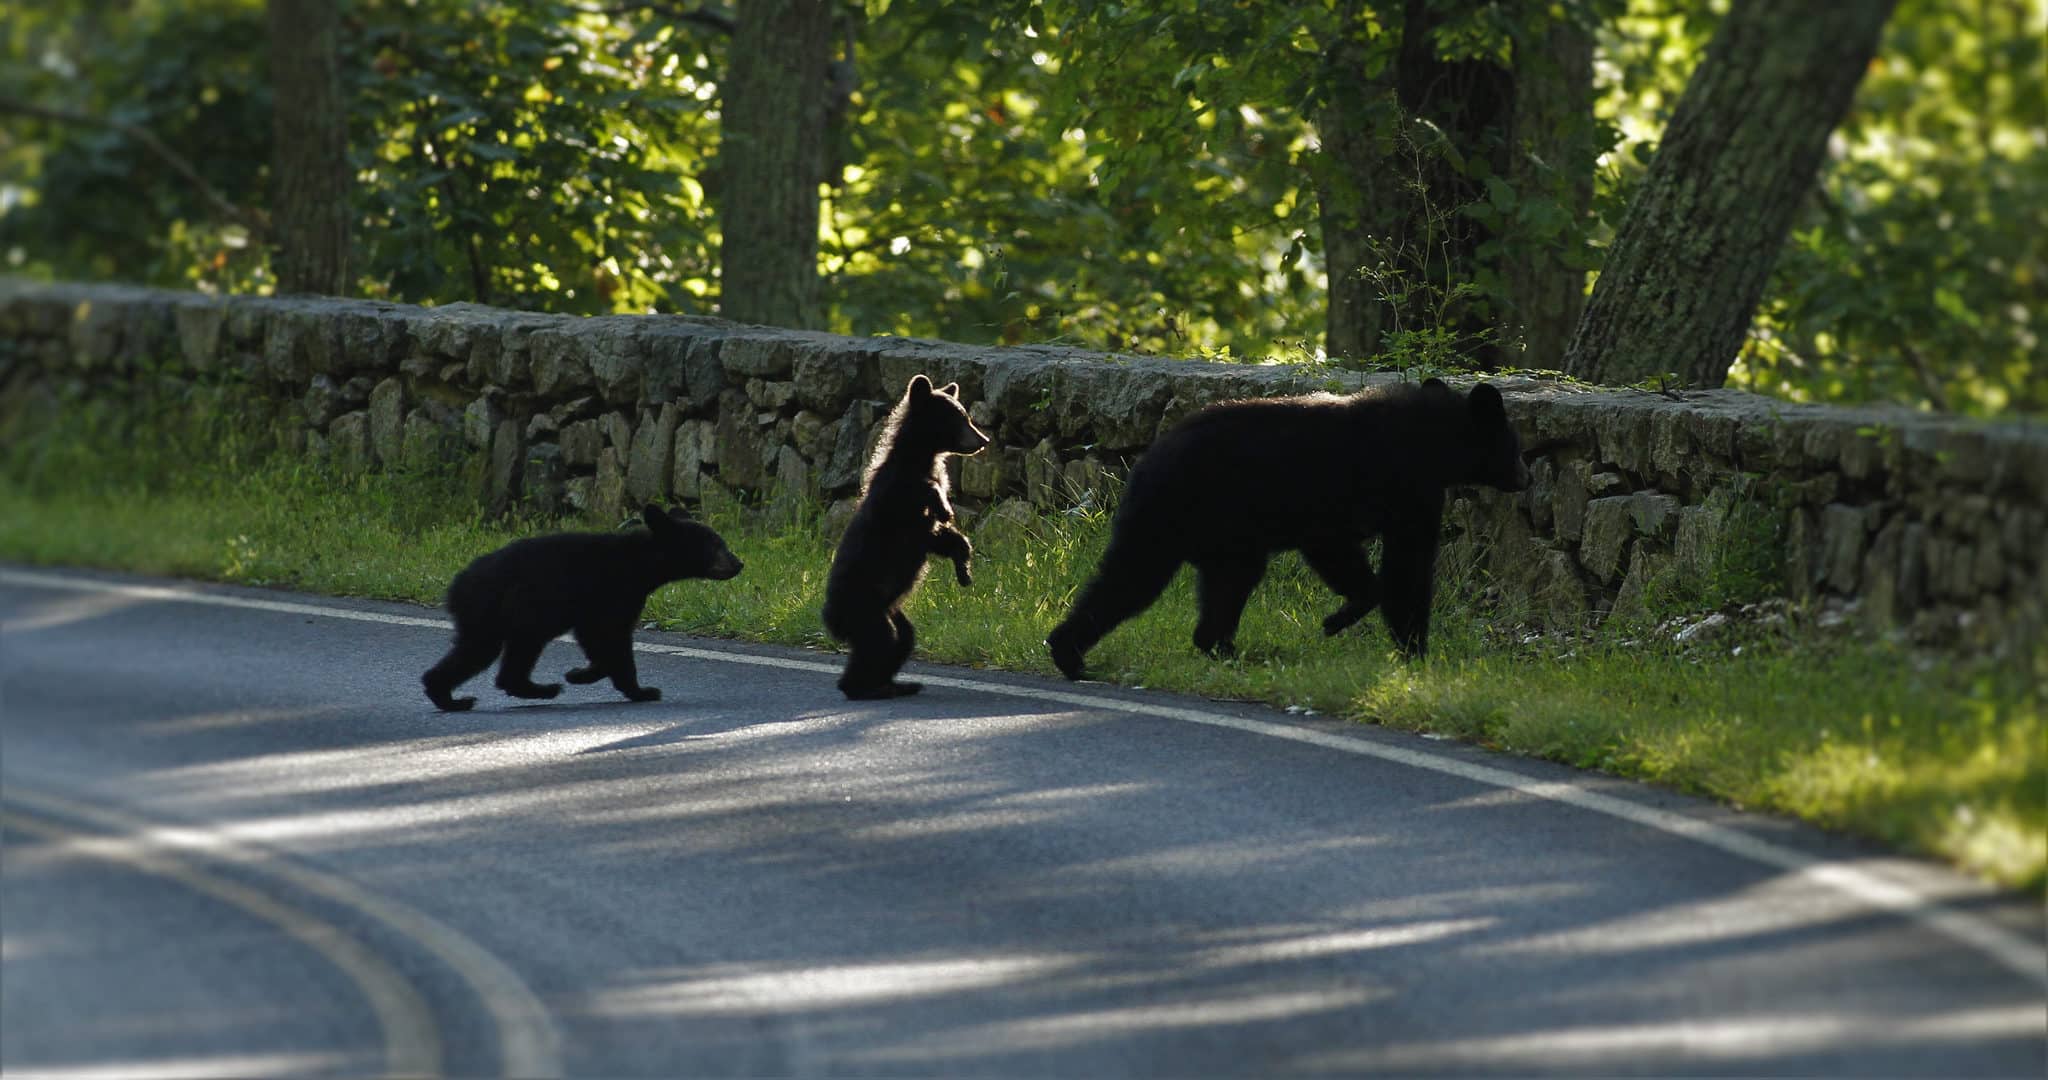 indelible-travel-usa-virginia-shenandoah-national-park-zwarte-beer-black-bear-wildlife